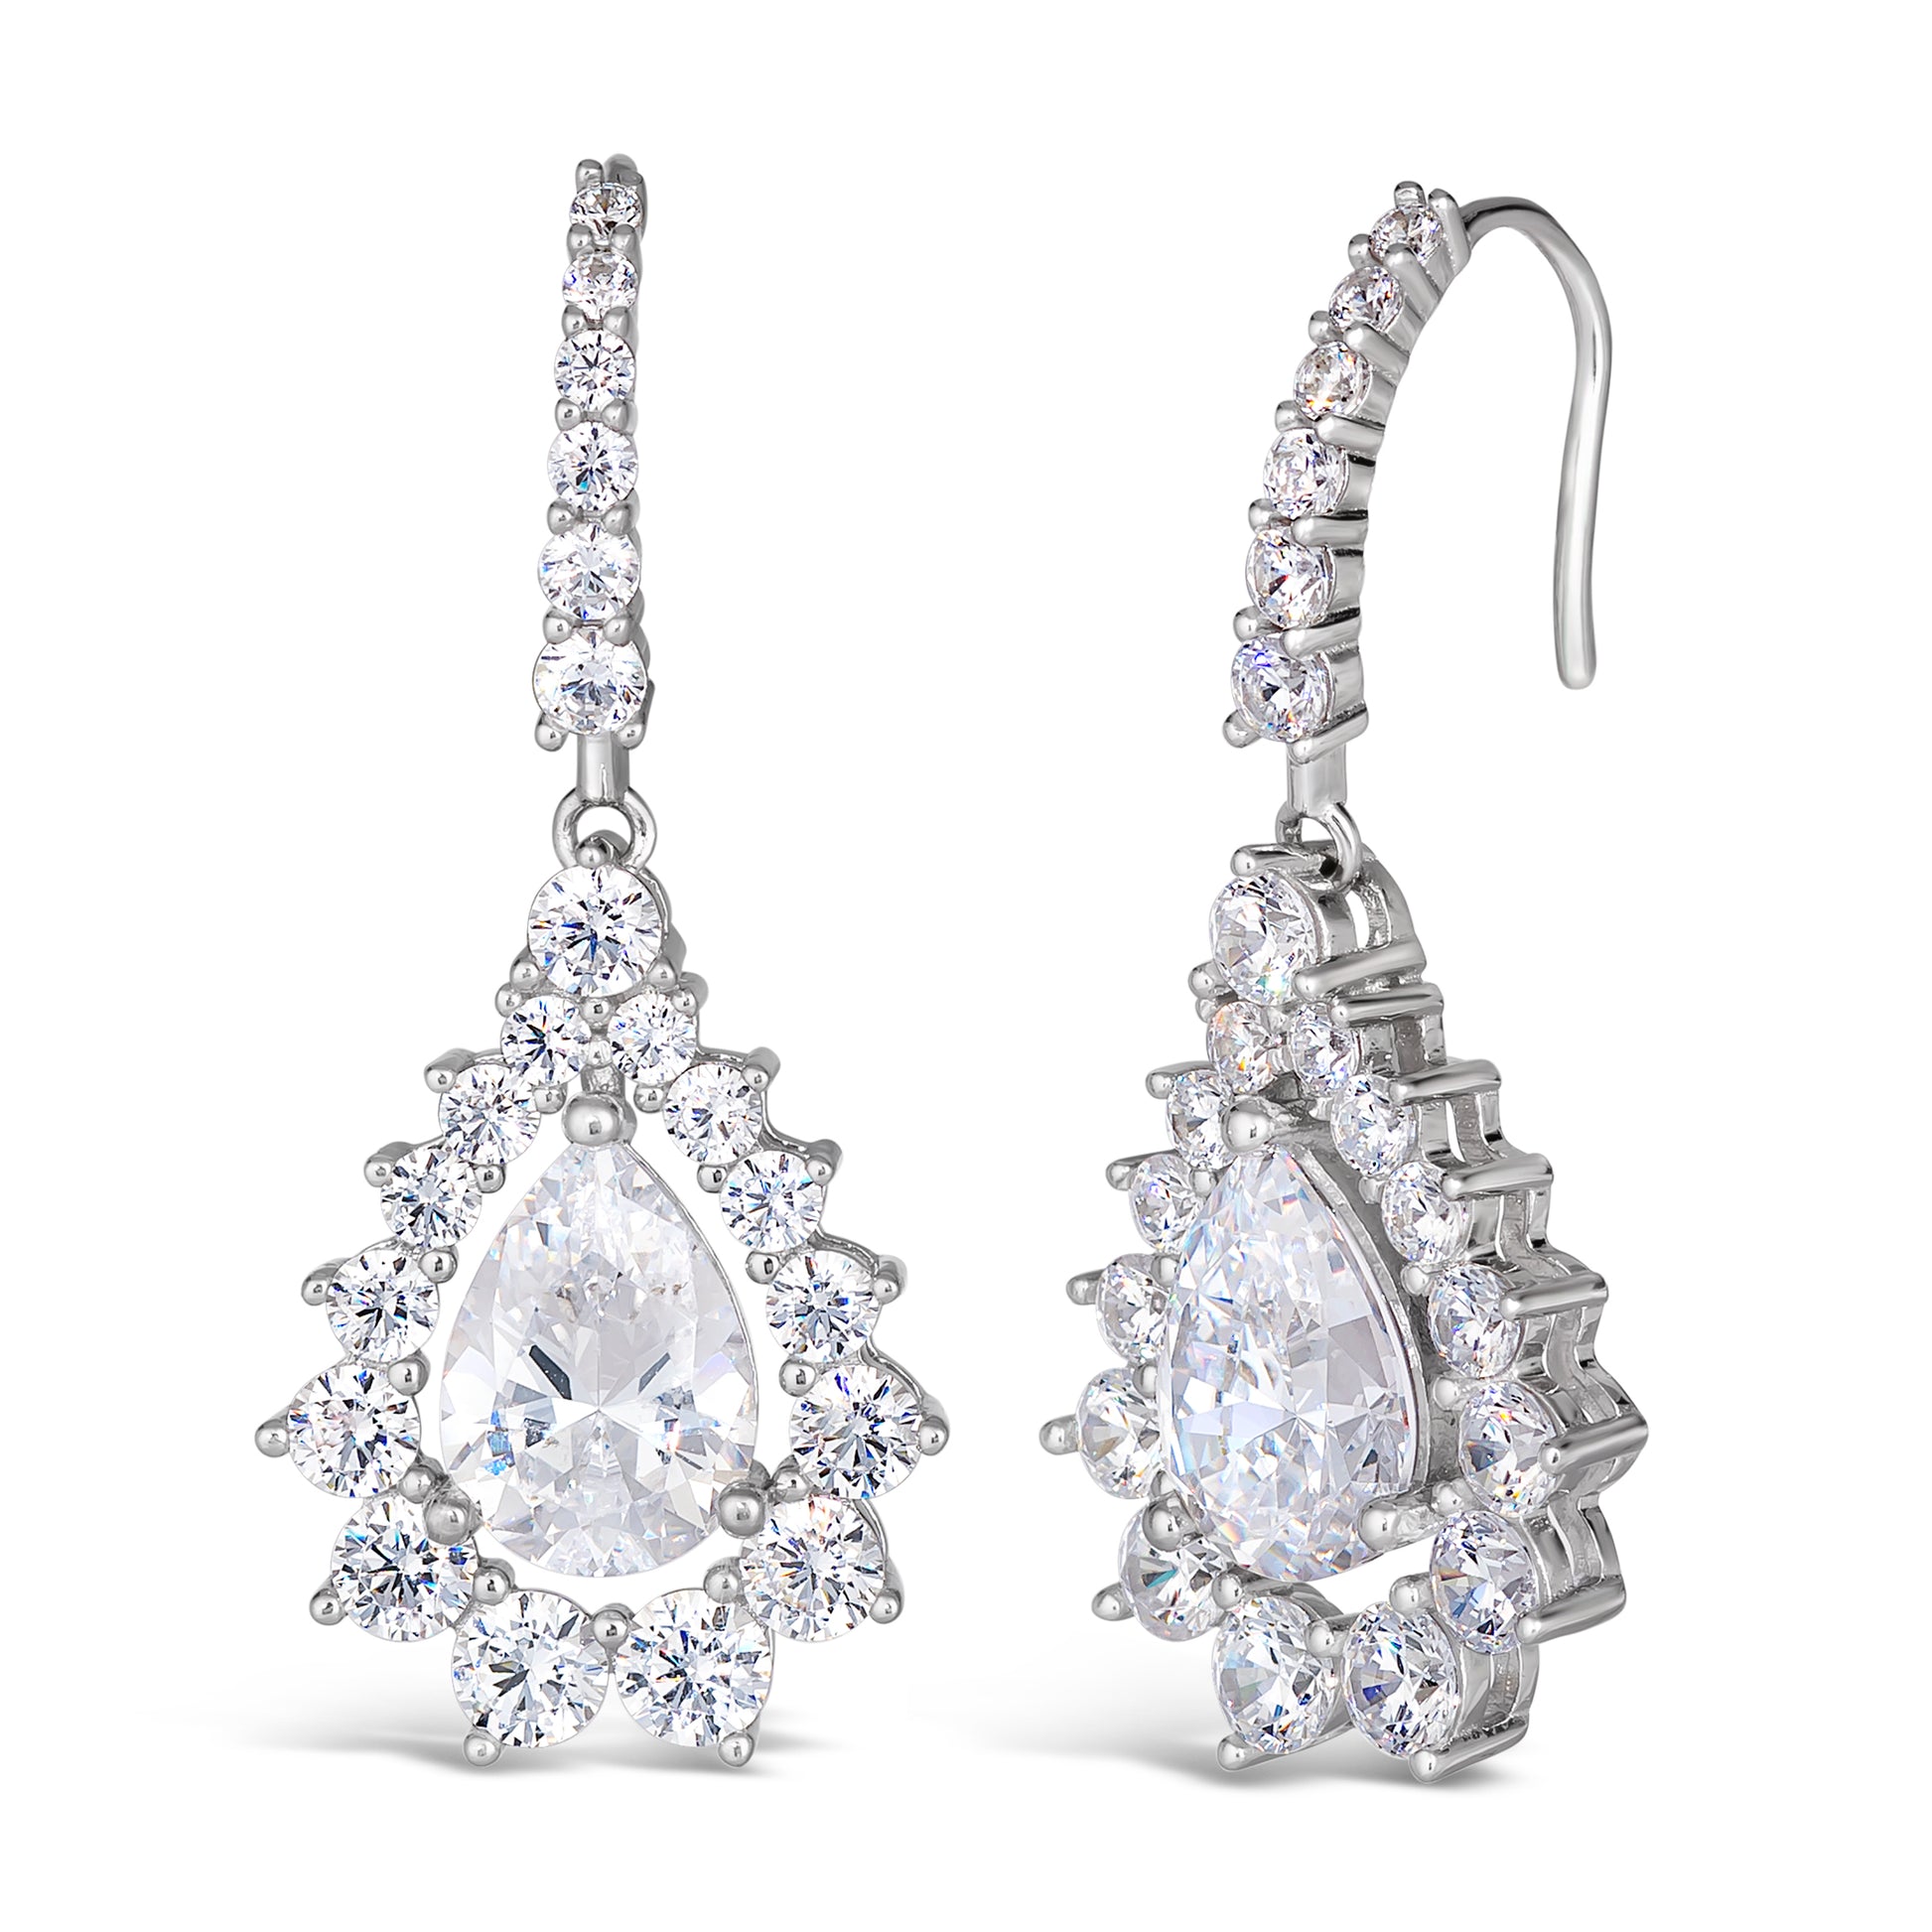 Elizabeth 48 Earrings - Anna Zuckerman Luxury Earrings